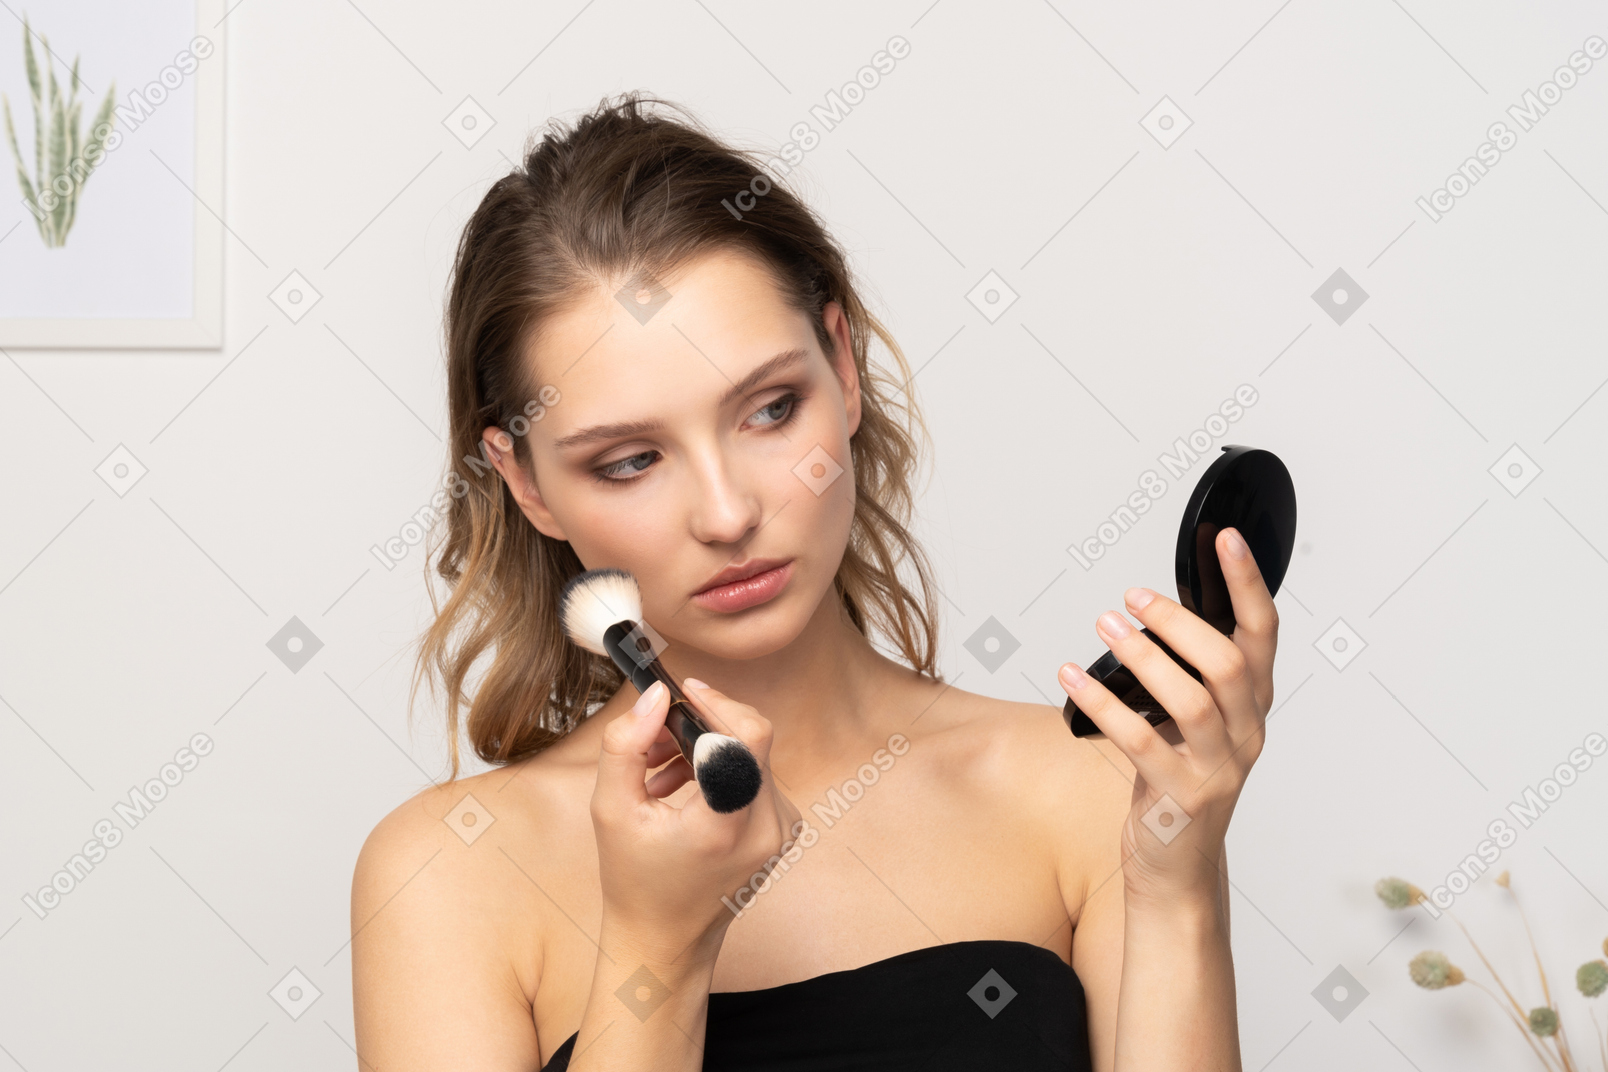 Vista frontal de uma jovem aplicando pó facial enquanto segura um espelho